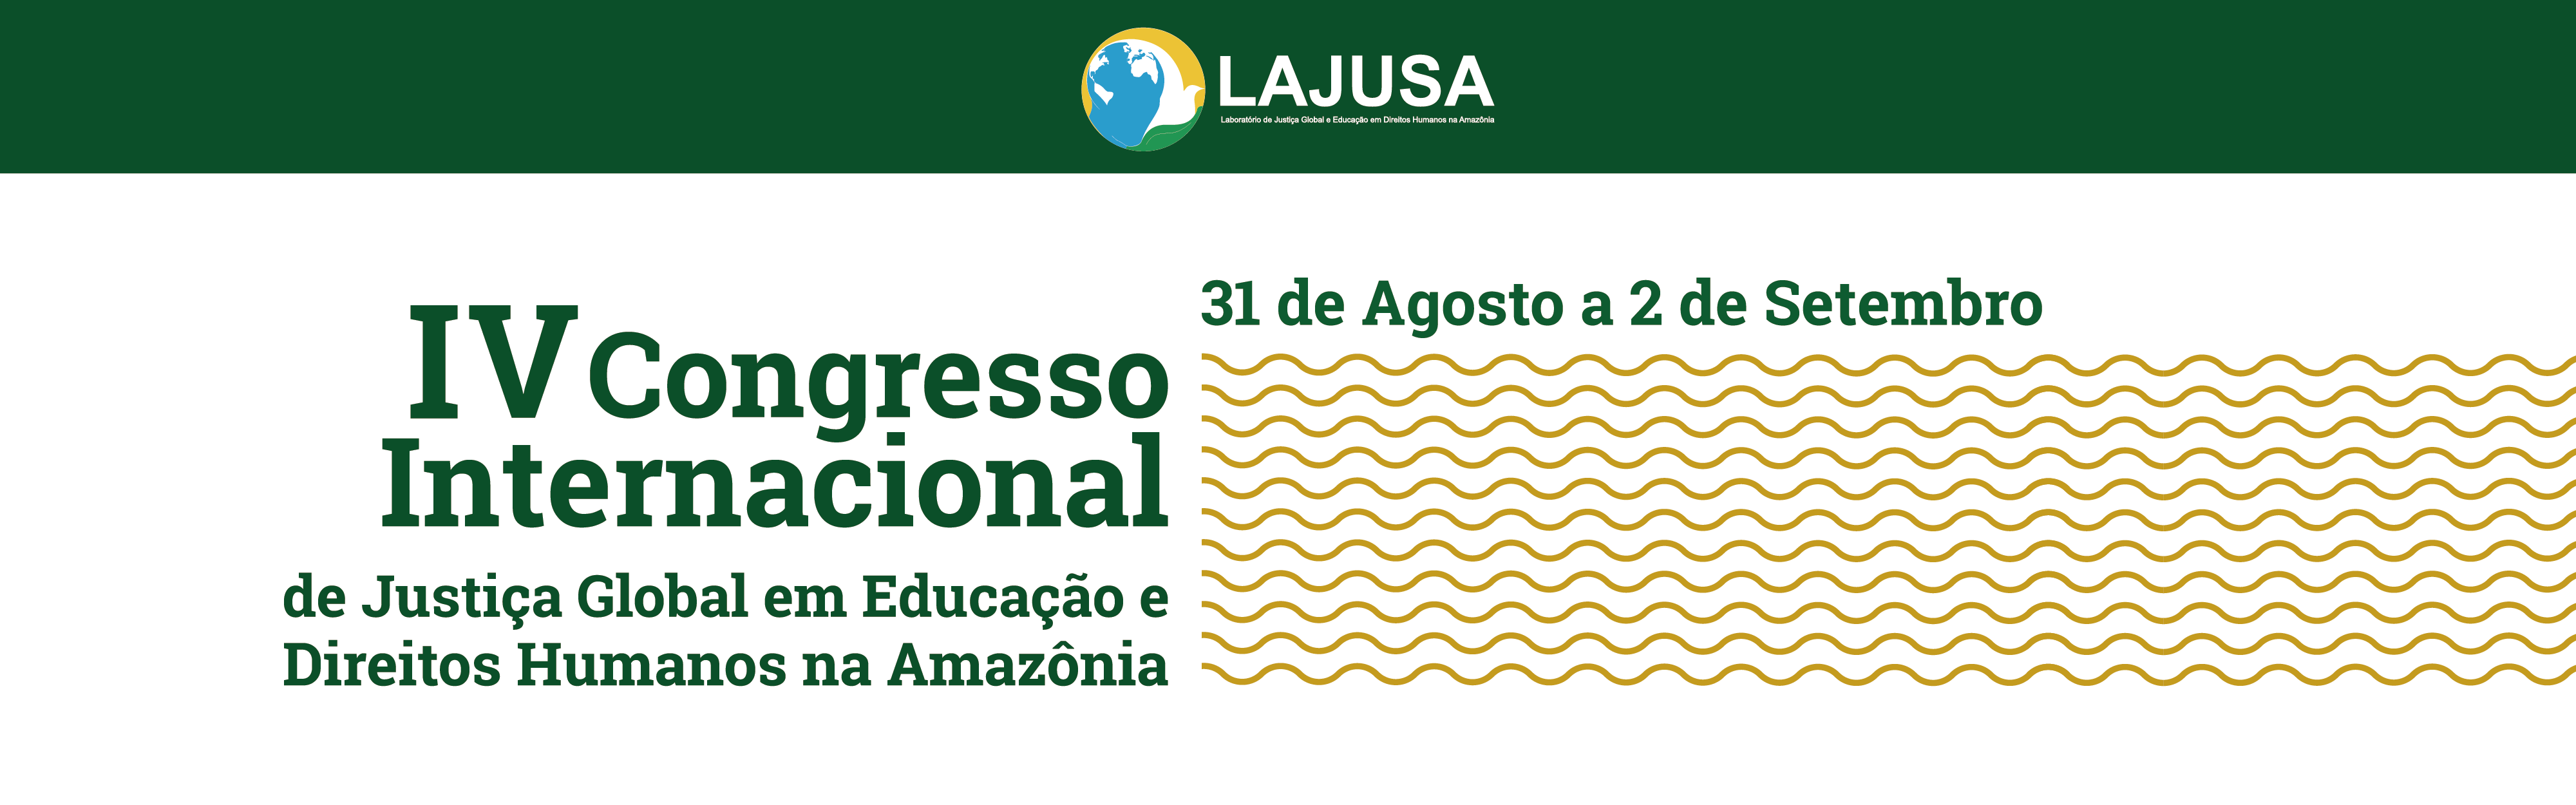 IV Congresso Internacional de Justiça Global em Educação e Direitos Humanos na Amazônia